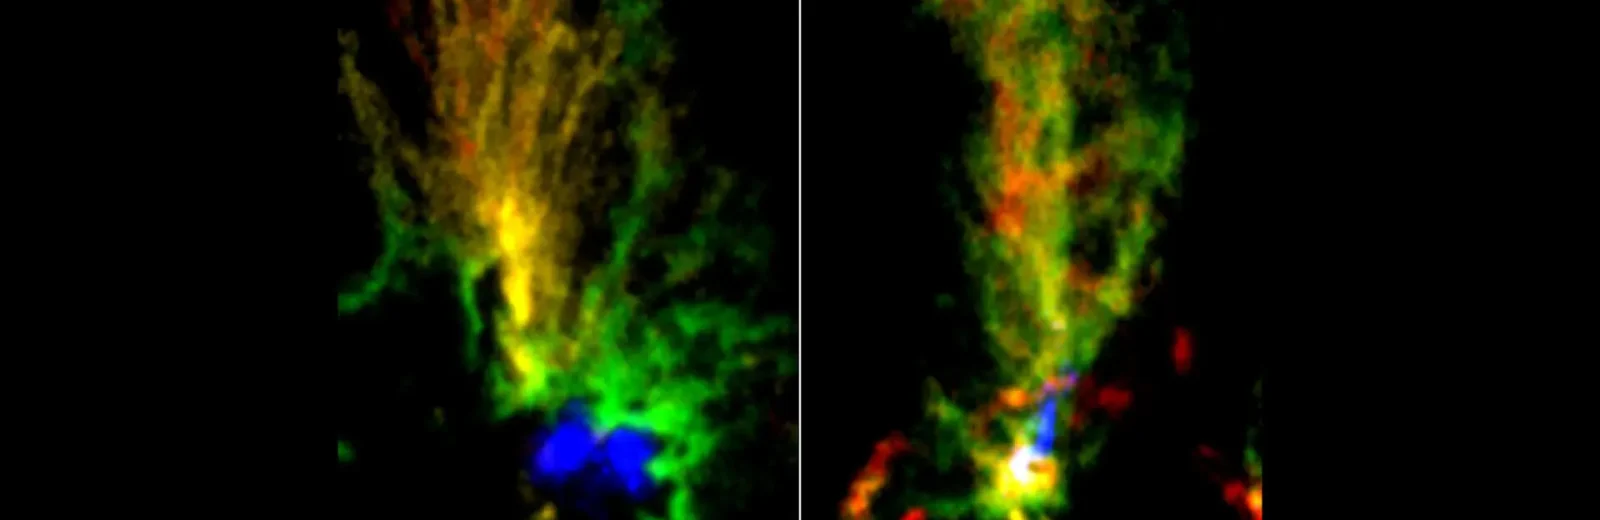 生產大量星星的「孔雀雲」暗示星系之間交互作用